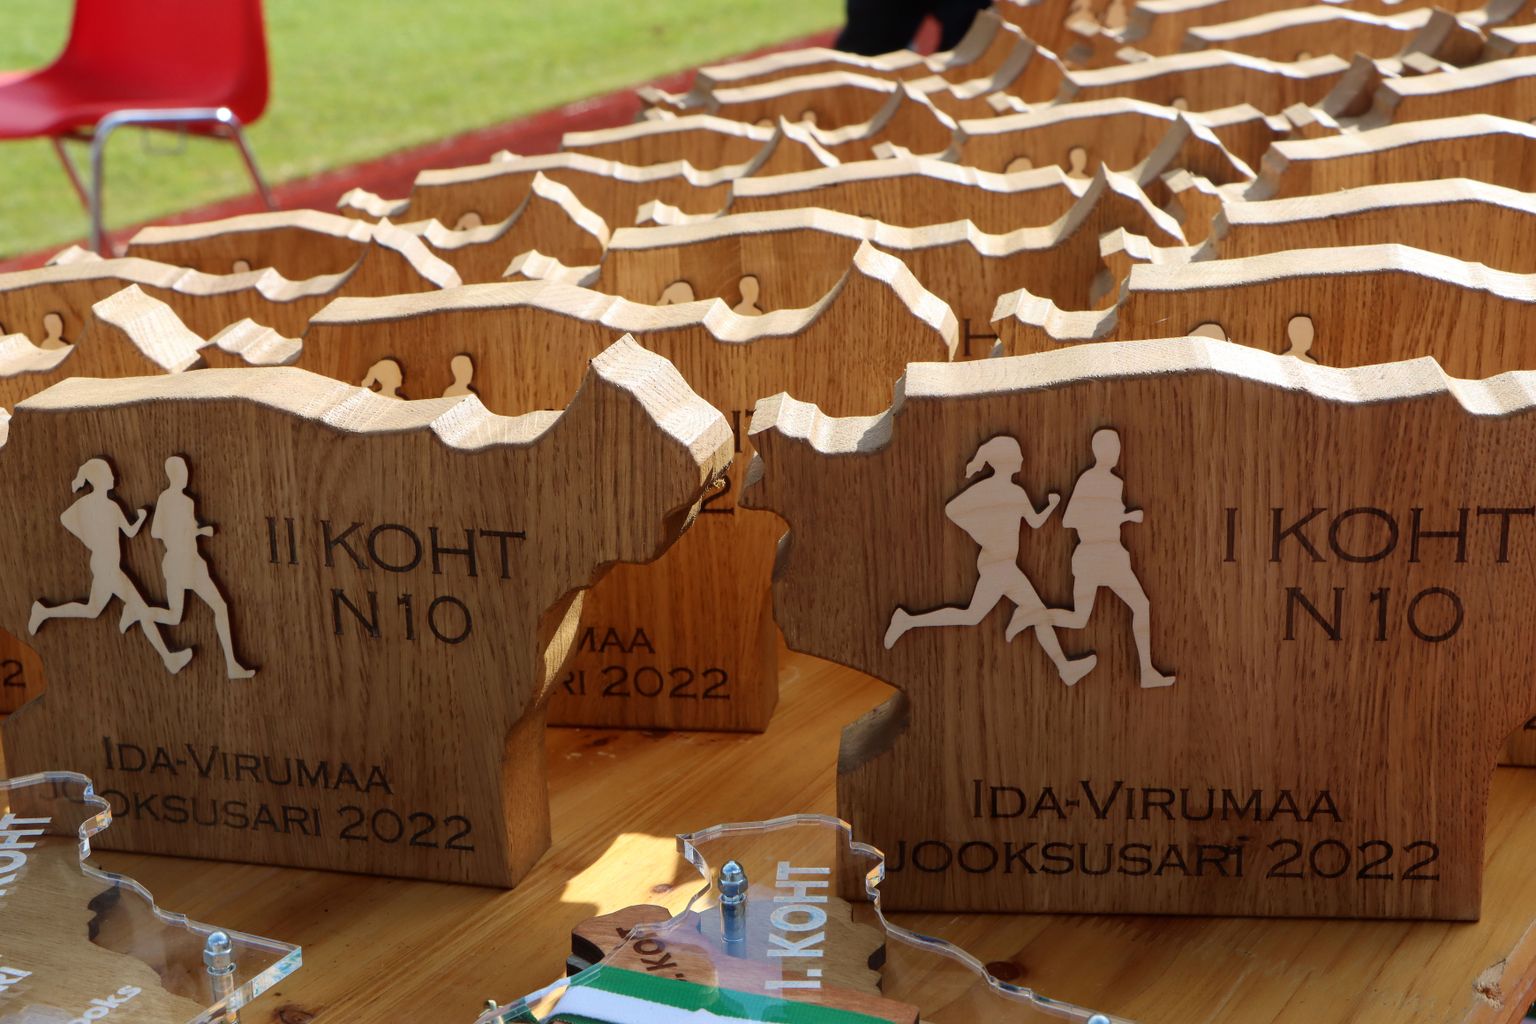 В субботу состоится Йыхвиский народный бег, последний этап Ида-Вирумааской серии забегов.